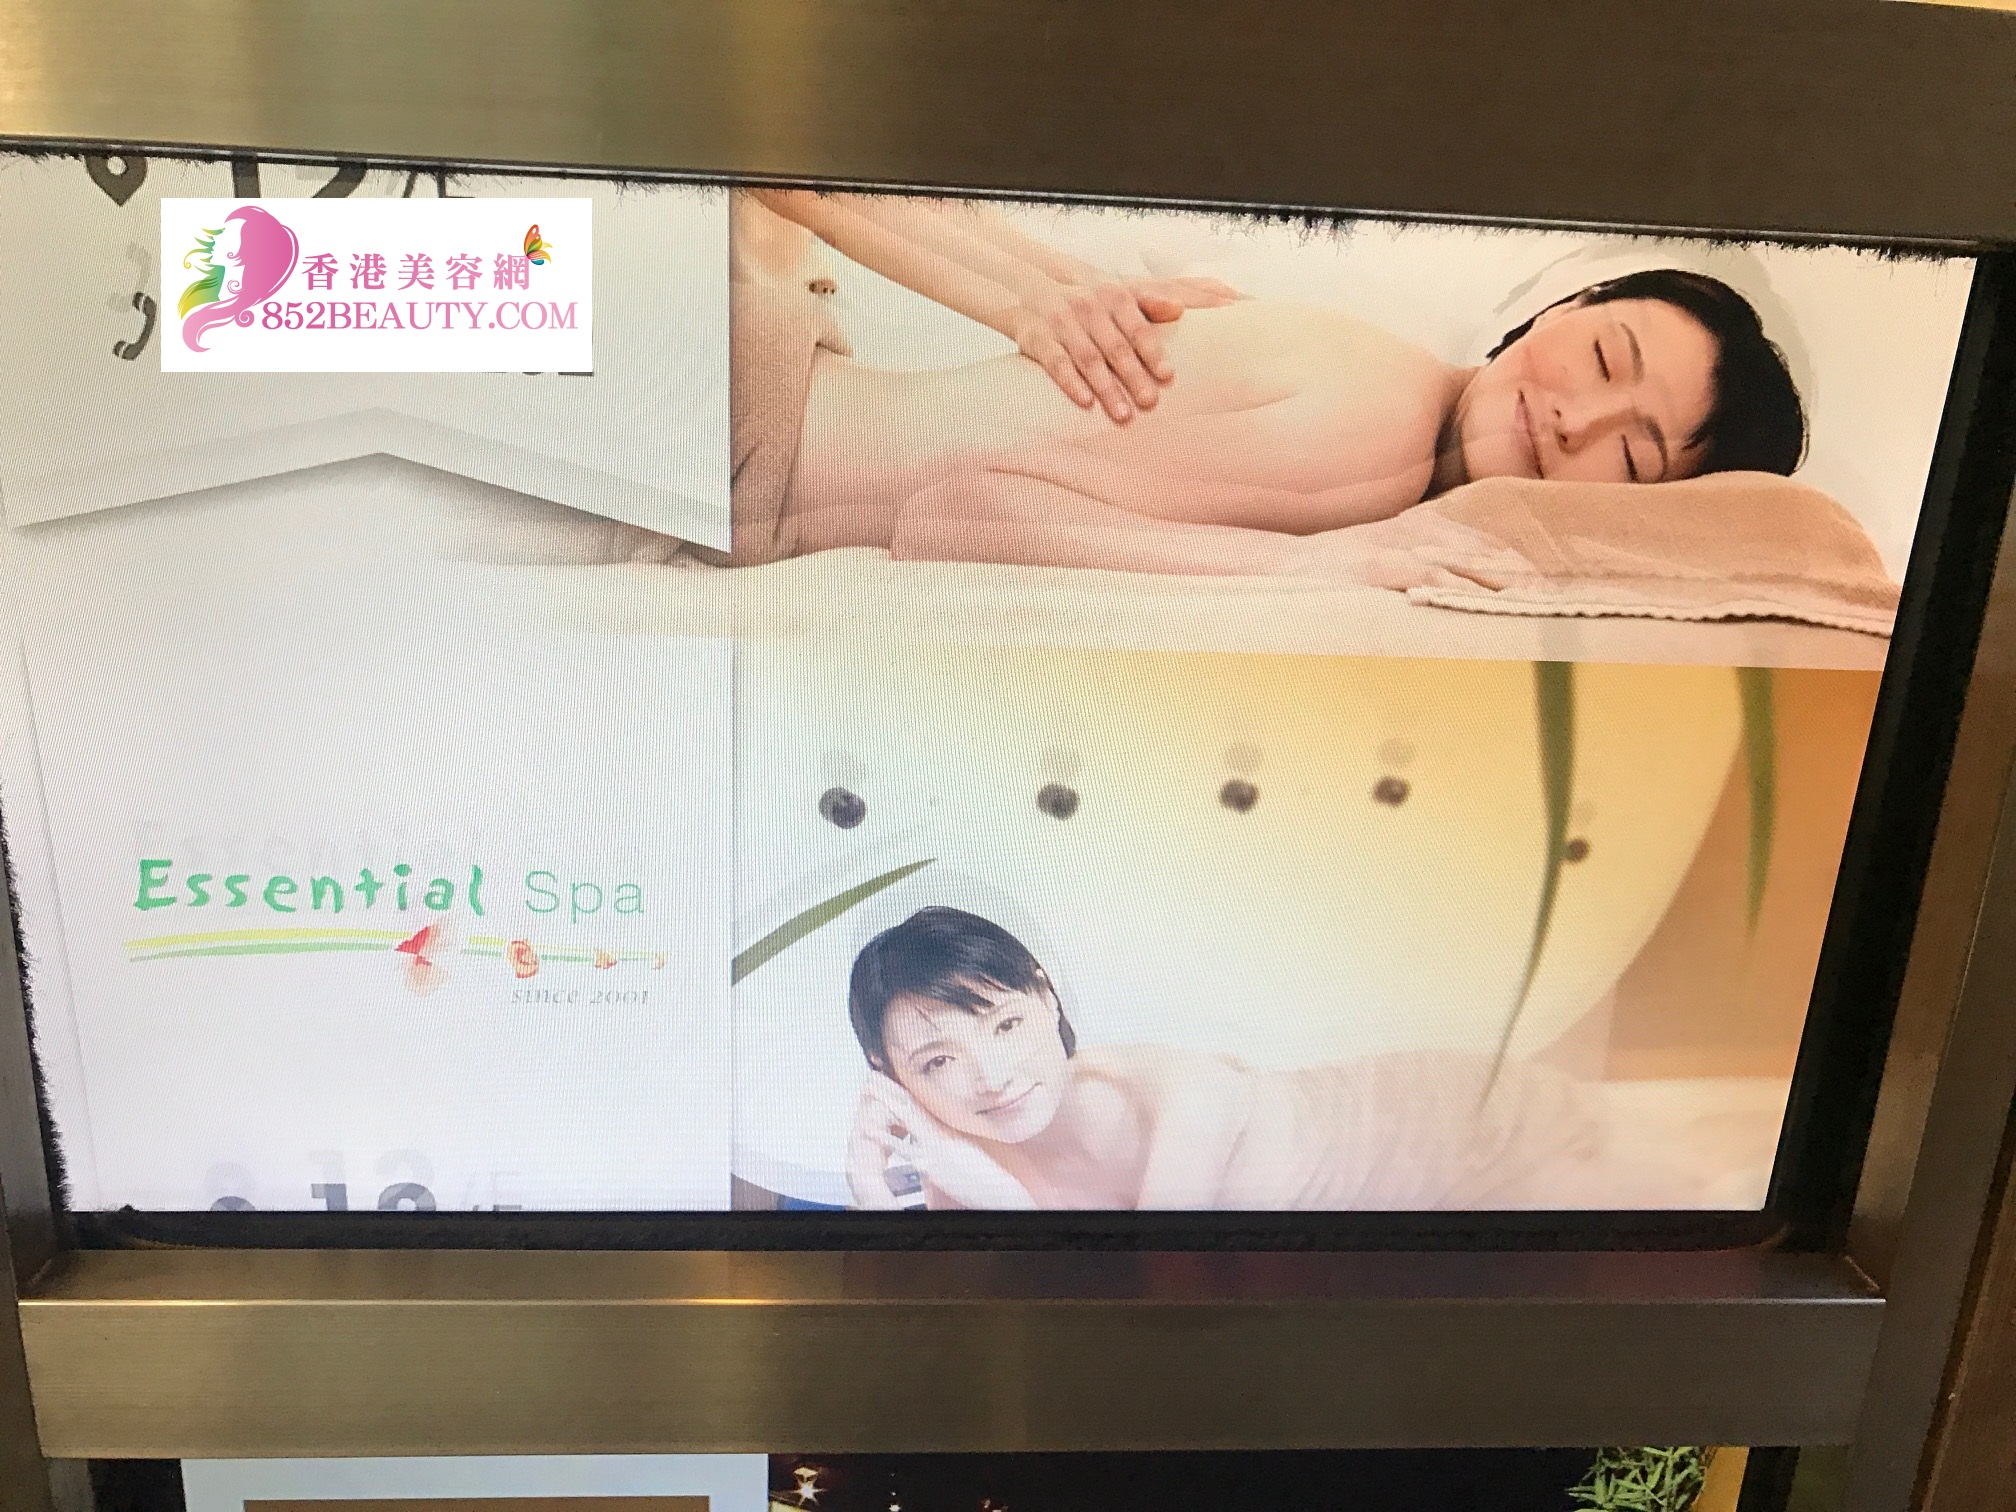 香港美容網 Hong Kong Beauty Salon 美容院 / 美容師: Essential SPA (中環店)